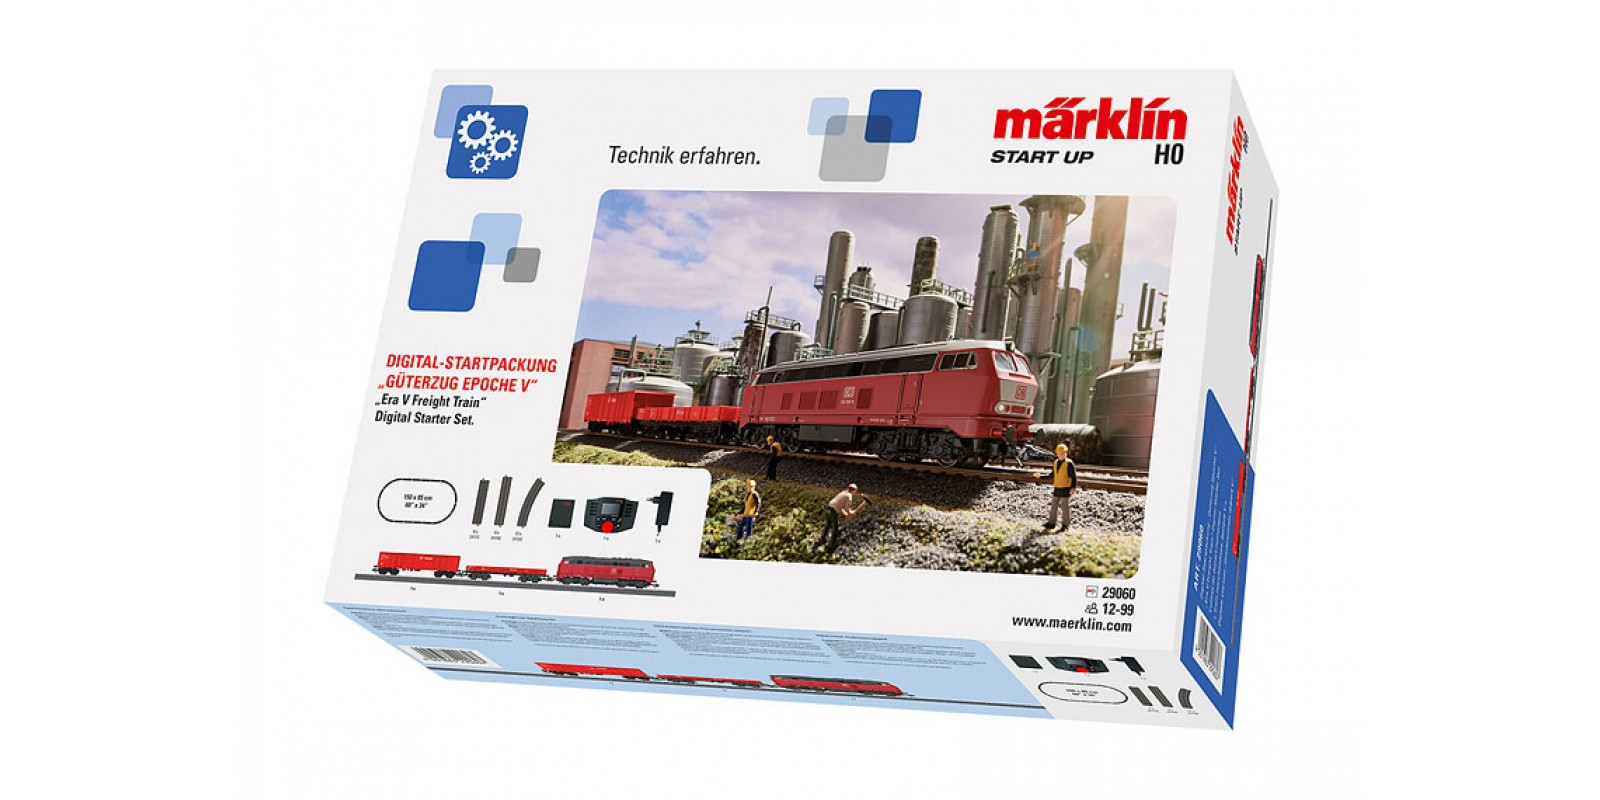 29060 Märklin Start up – "Era V Freight Train" Digital Starter Set. 230 Volts